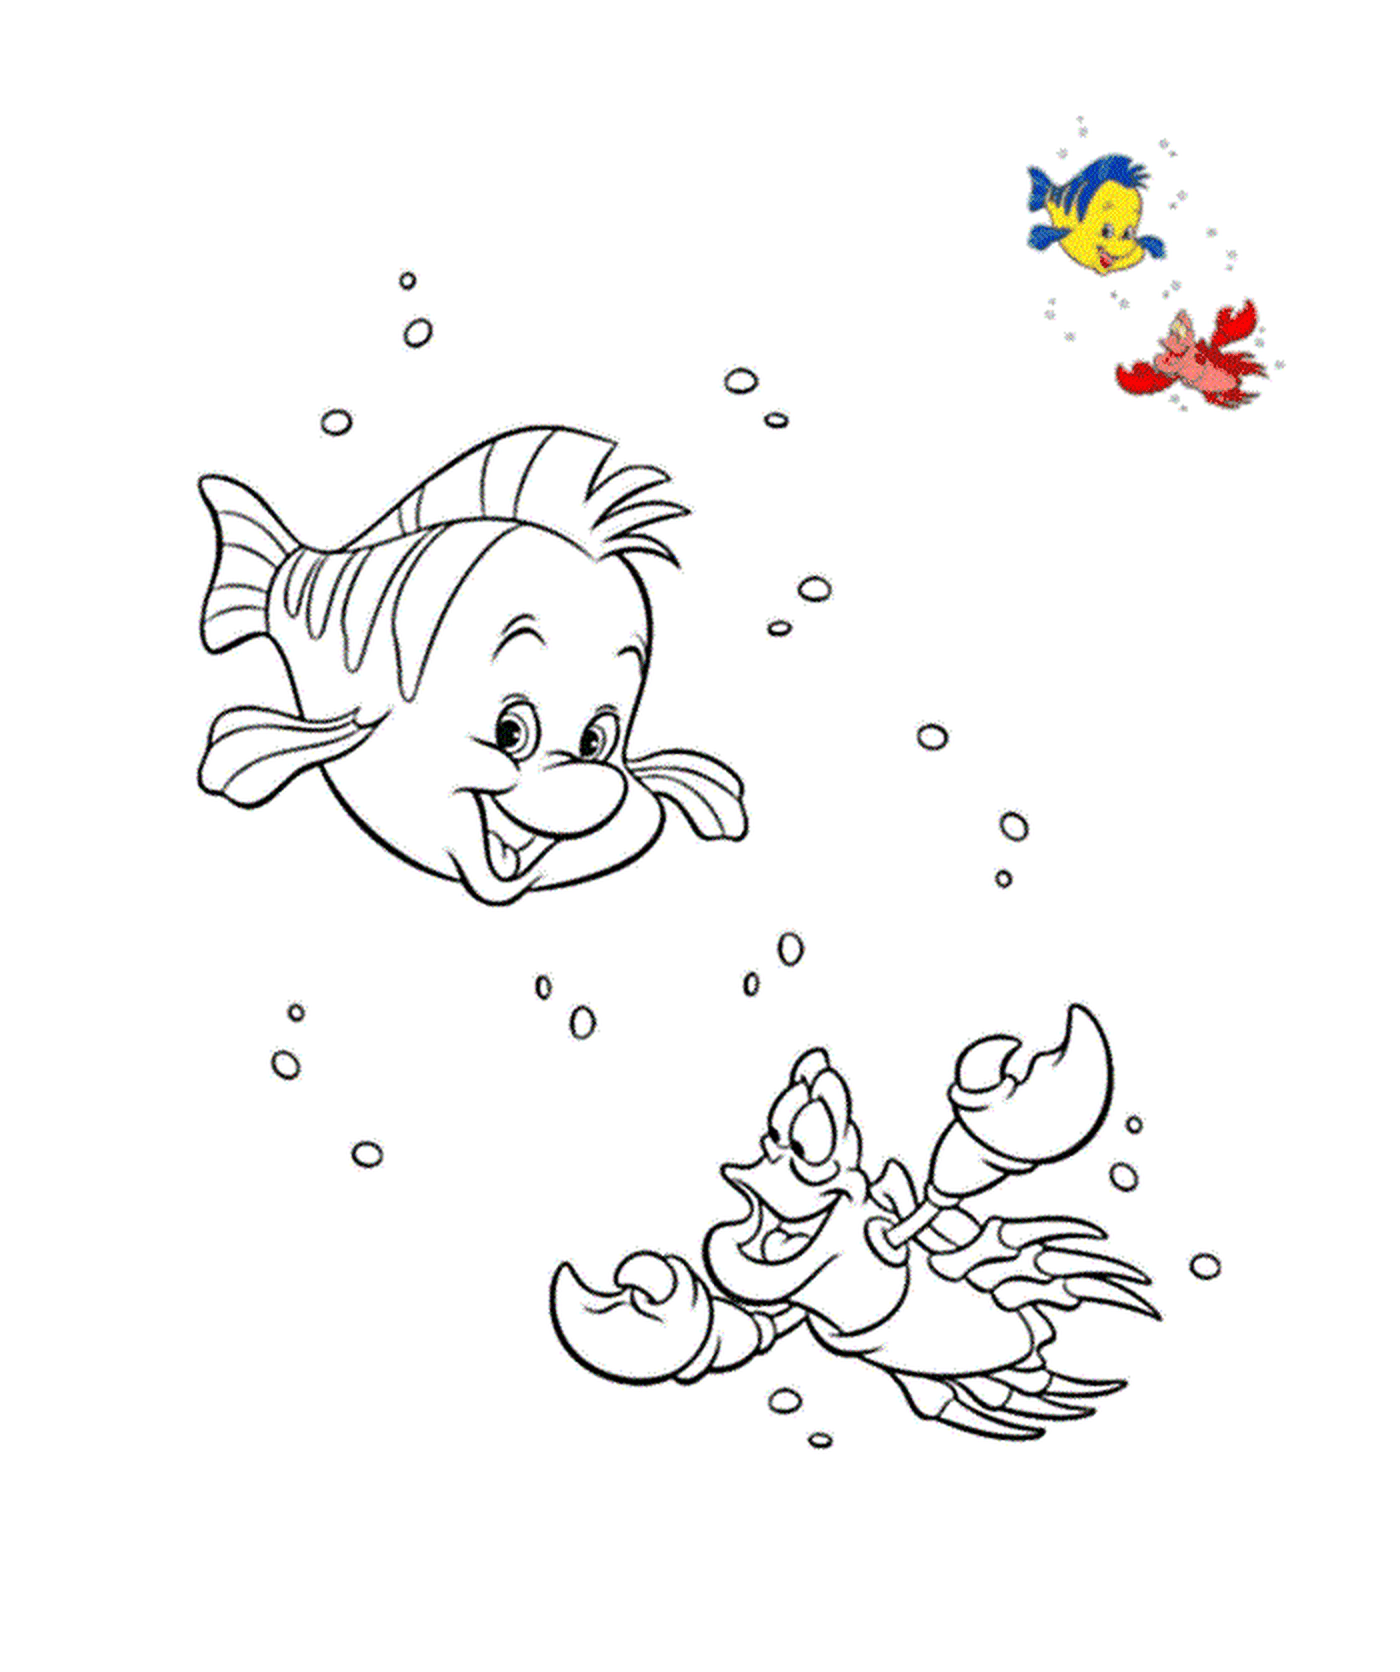  Un pez y un pato nadando en el agua 